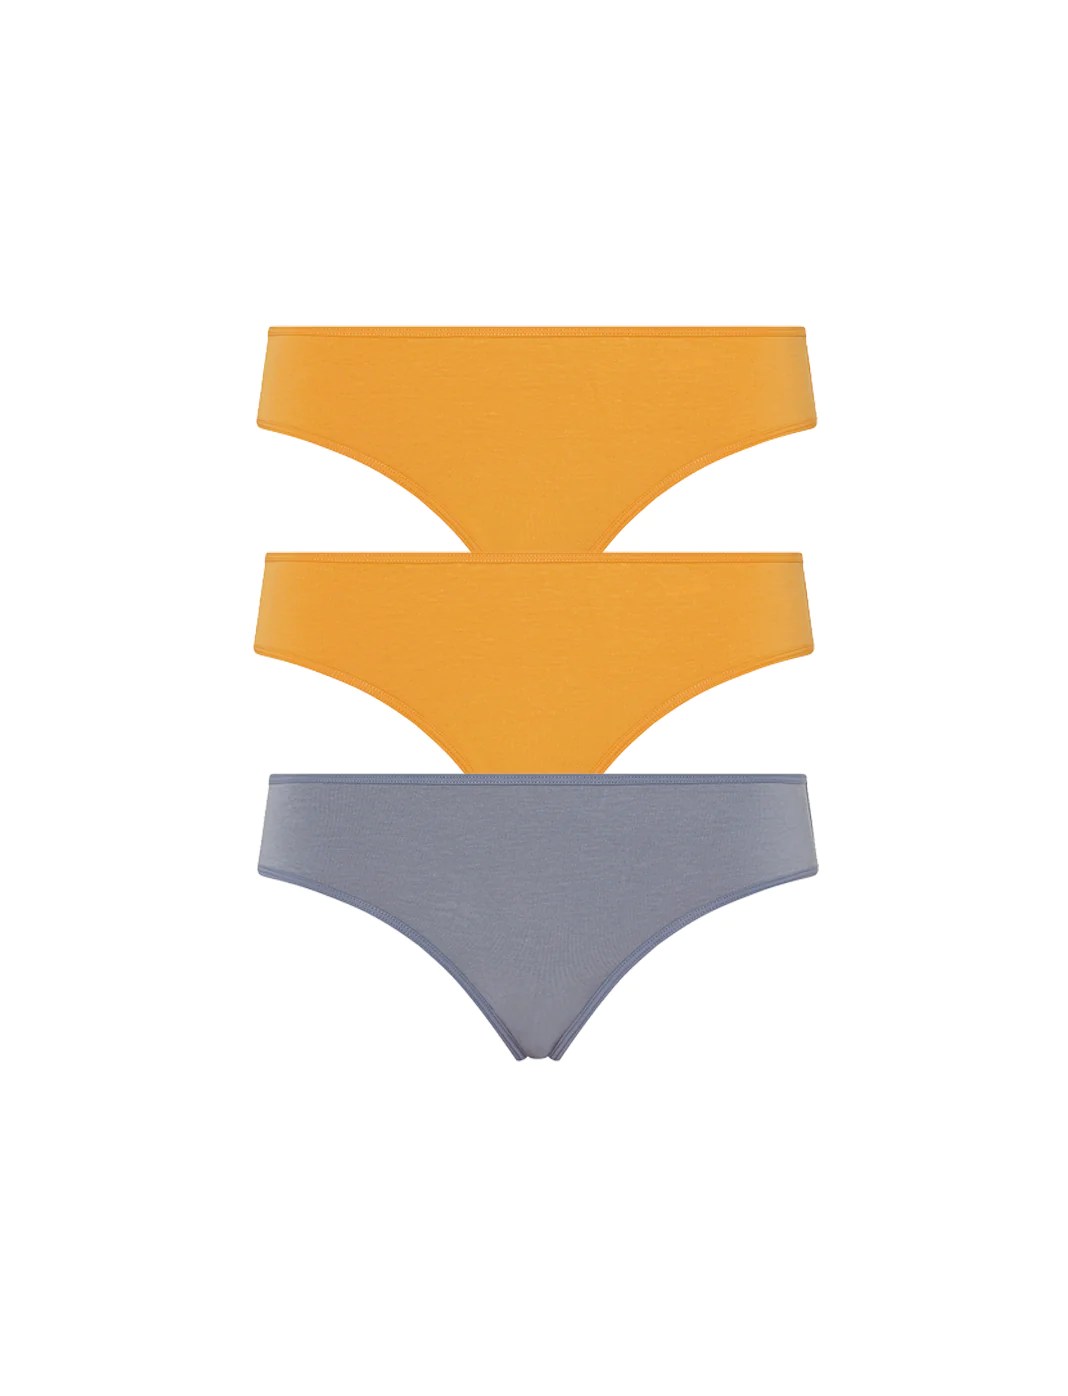 Gynecologist-Approved Underwear — Best Underwear for Your Health